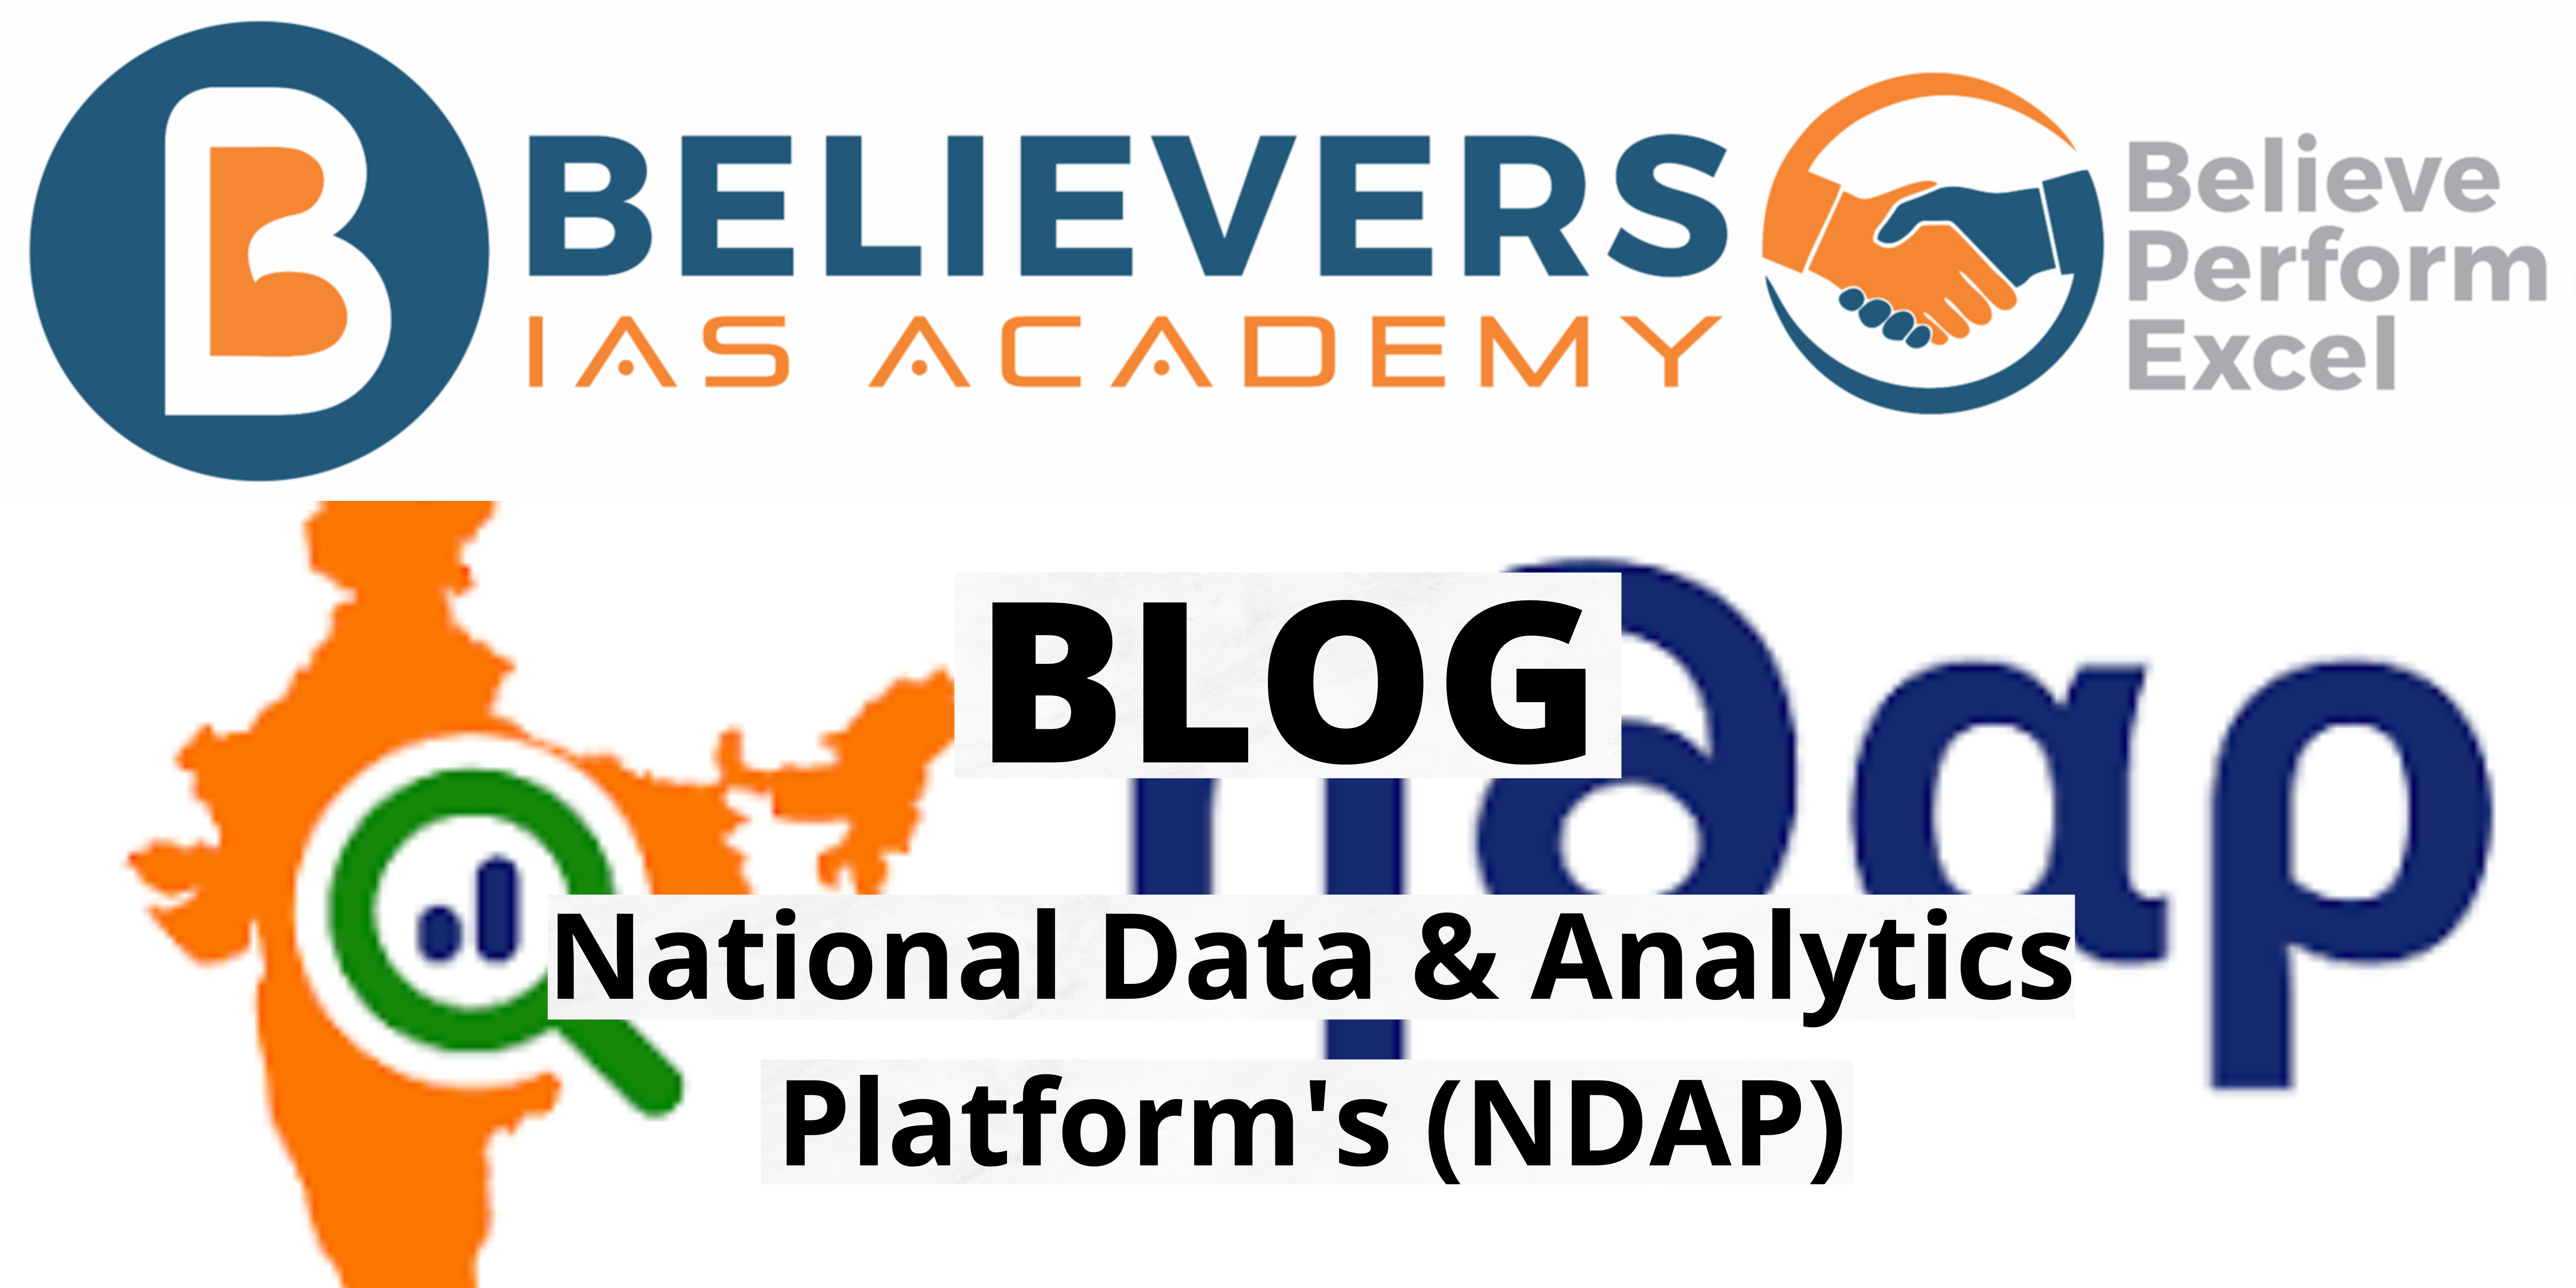 National Data & Analytics Platform's (NDAP)